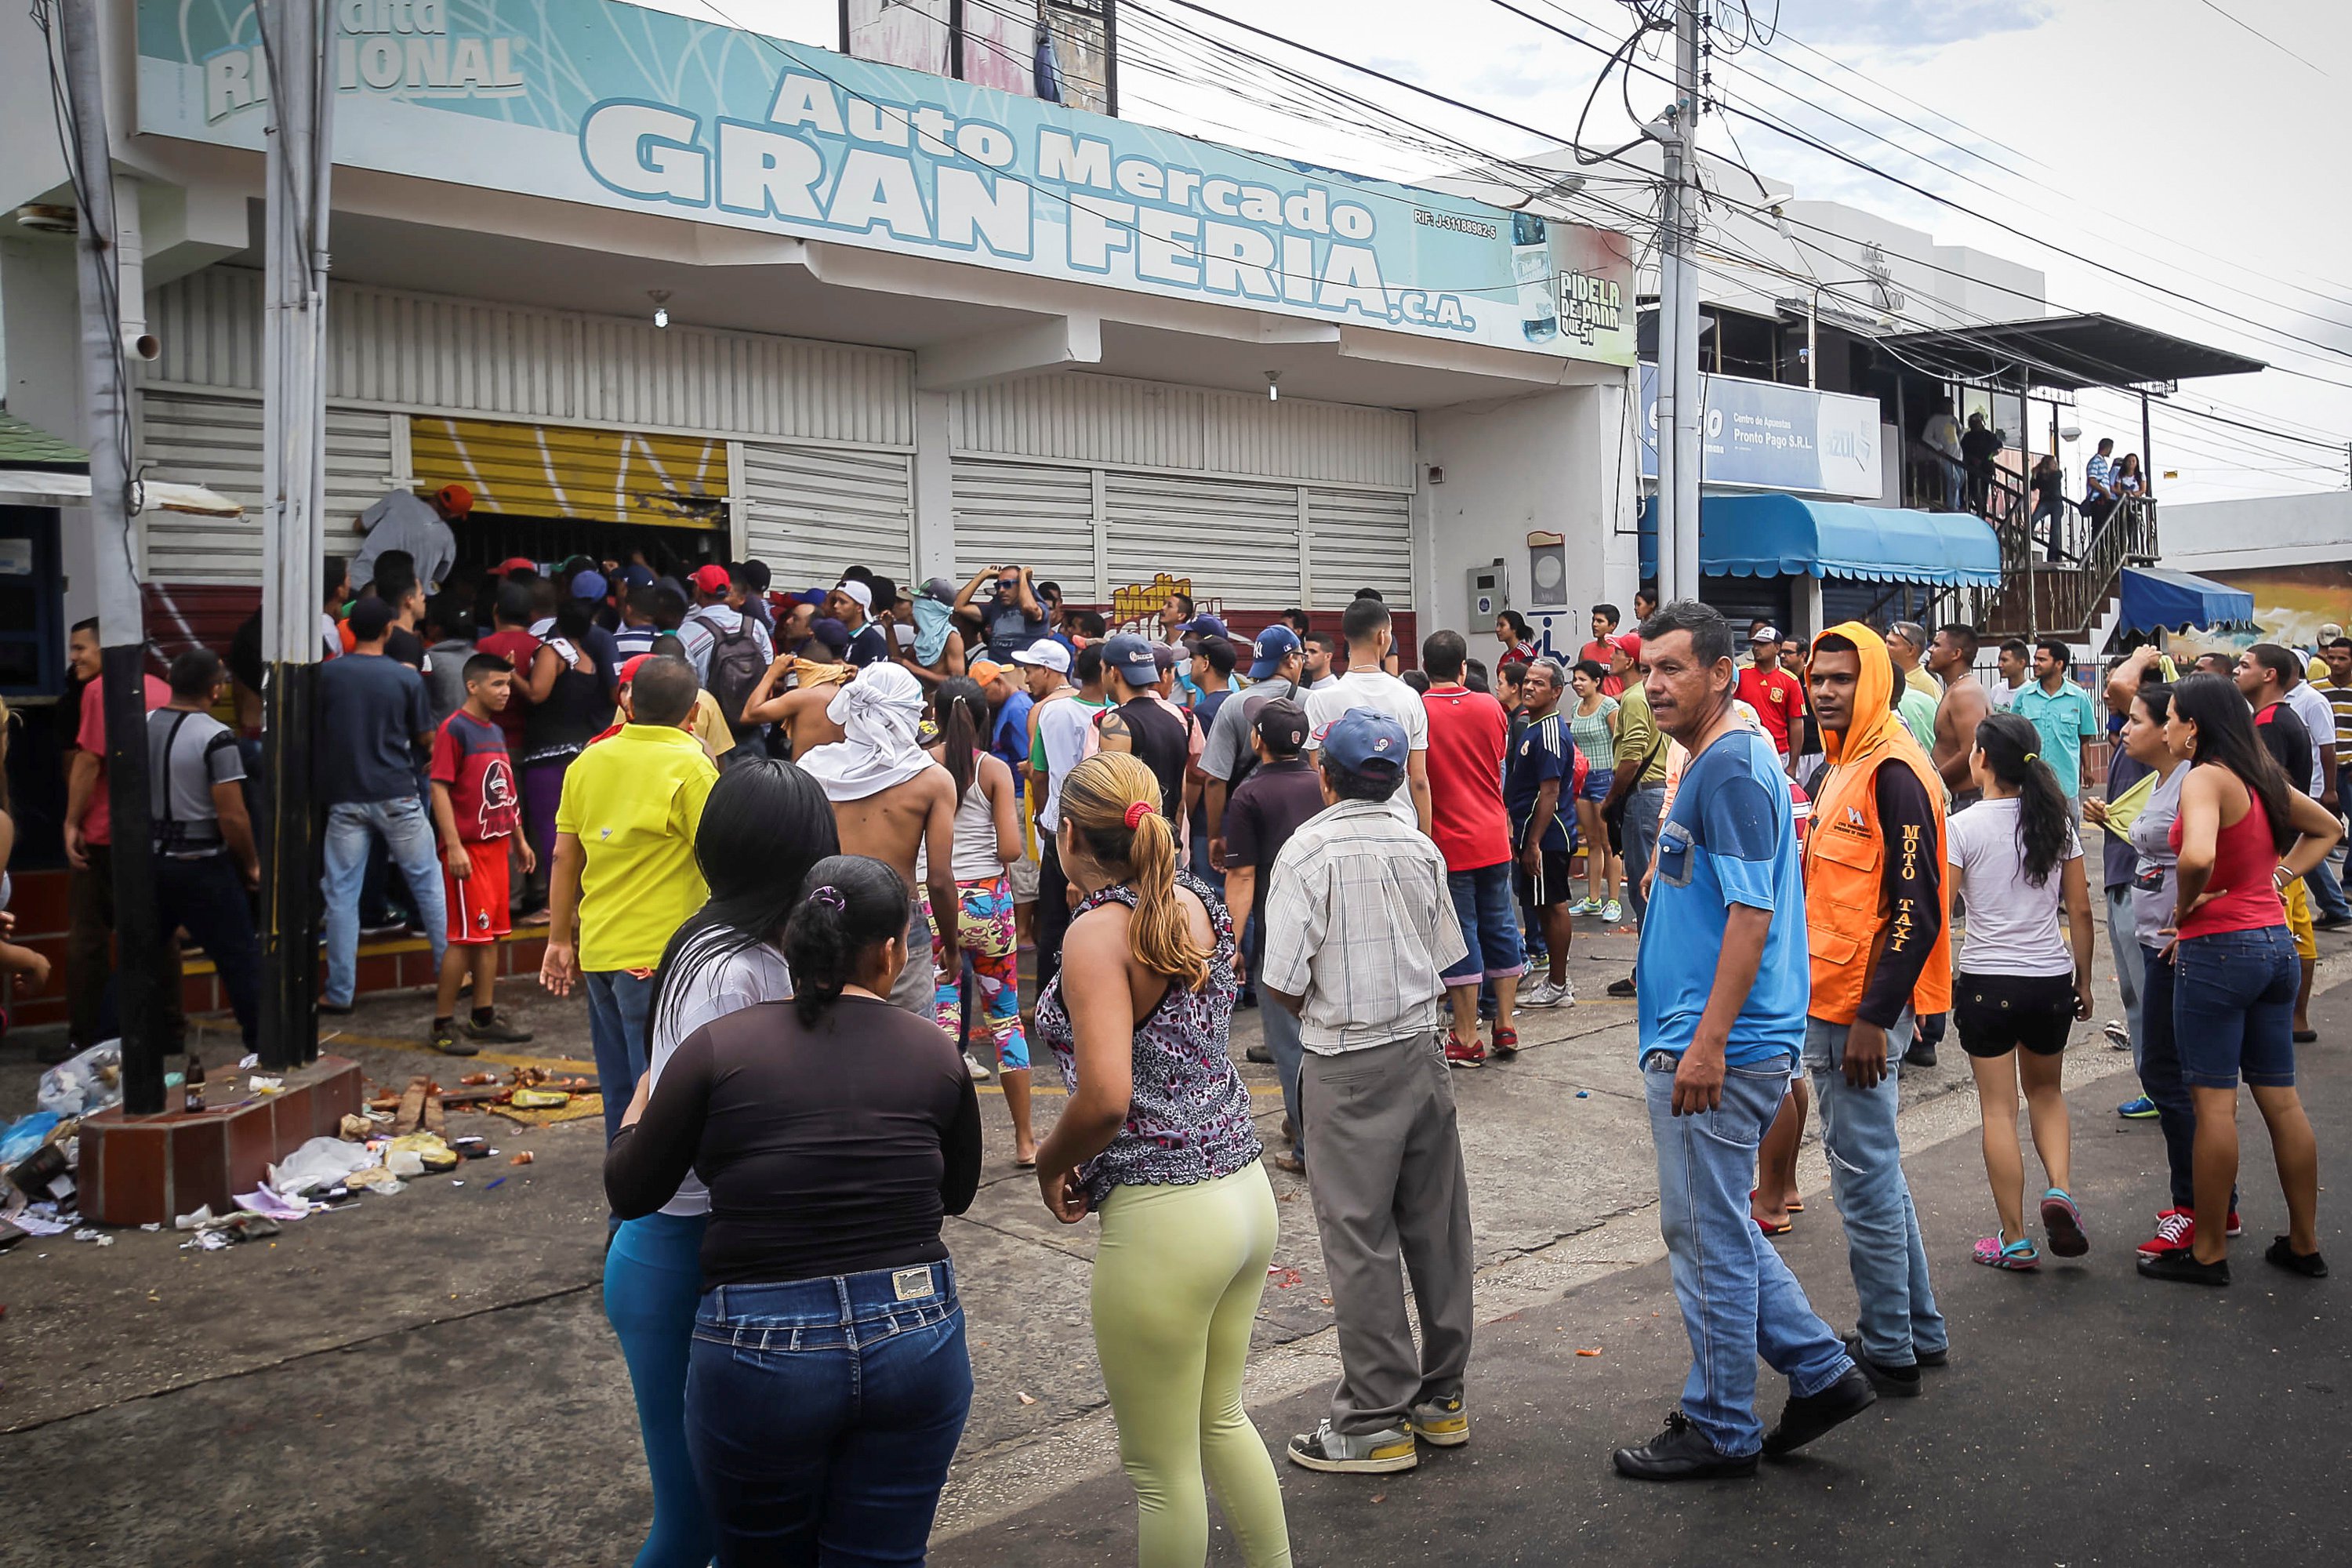 Ciudad Bolivar, Venezuela December 17, 2016. REUTERS/William Urdaneta EDITORIAL USE ONLY. NO RESALES. NO ARCHIVE.